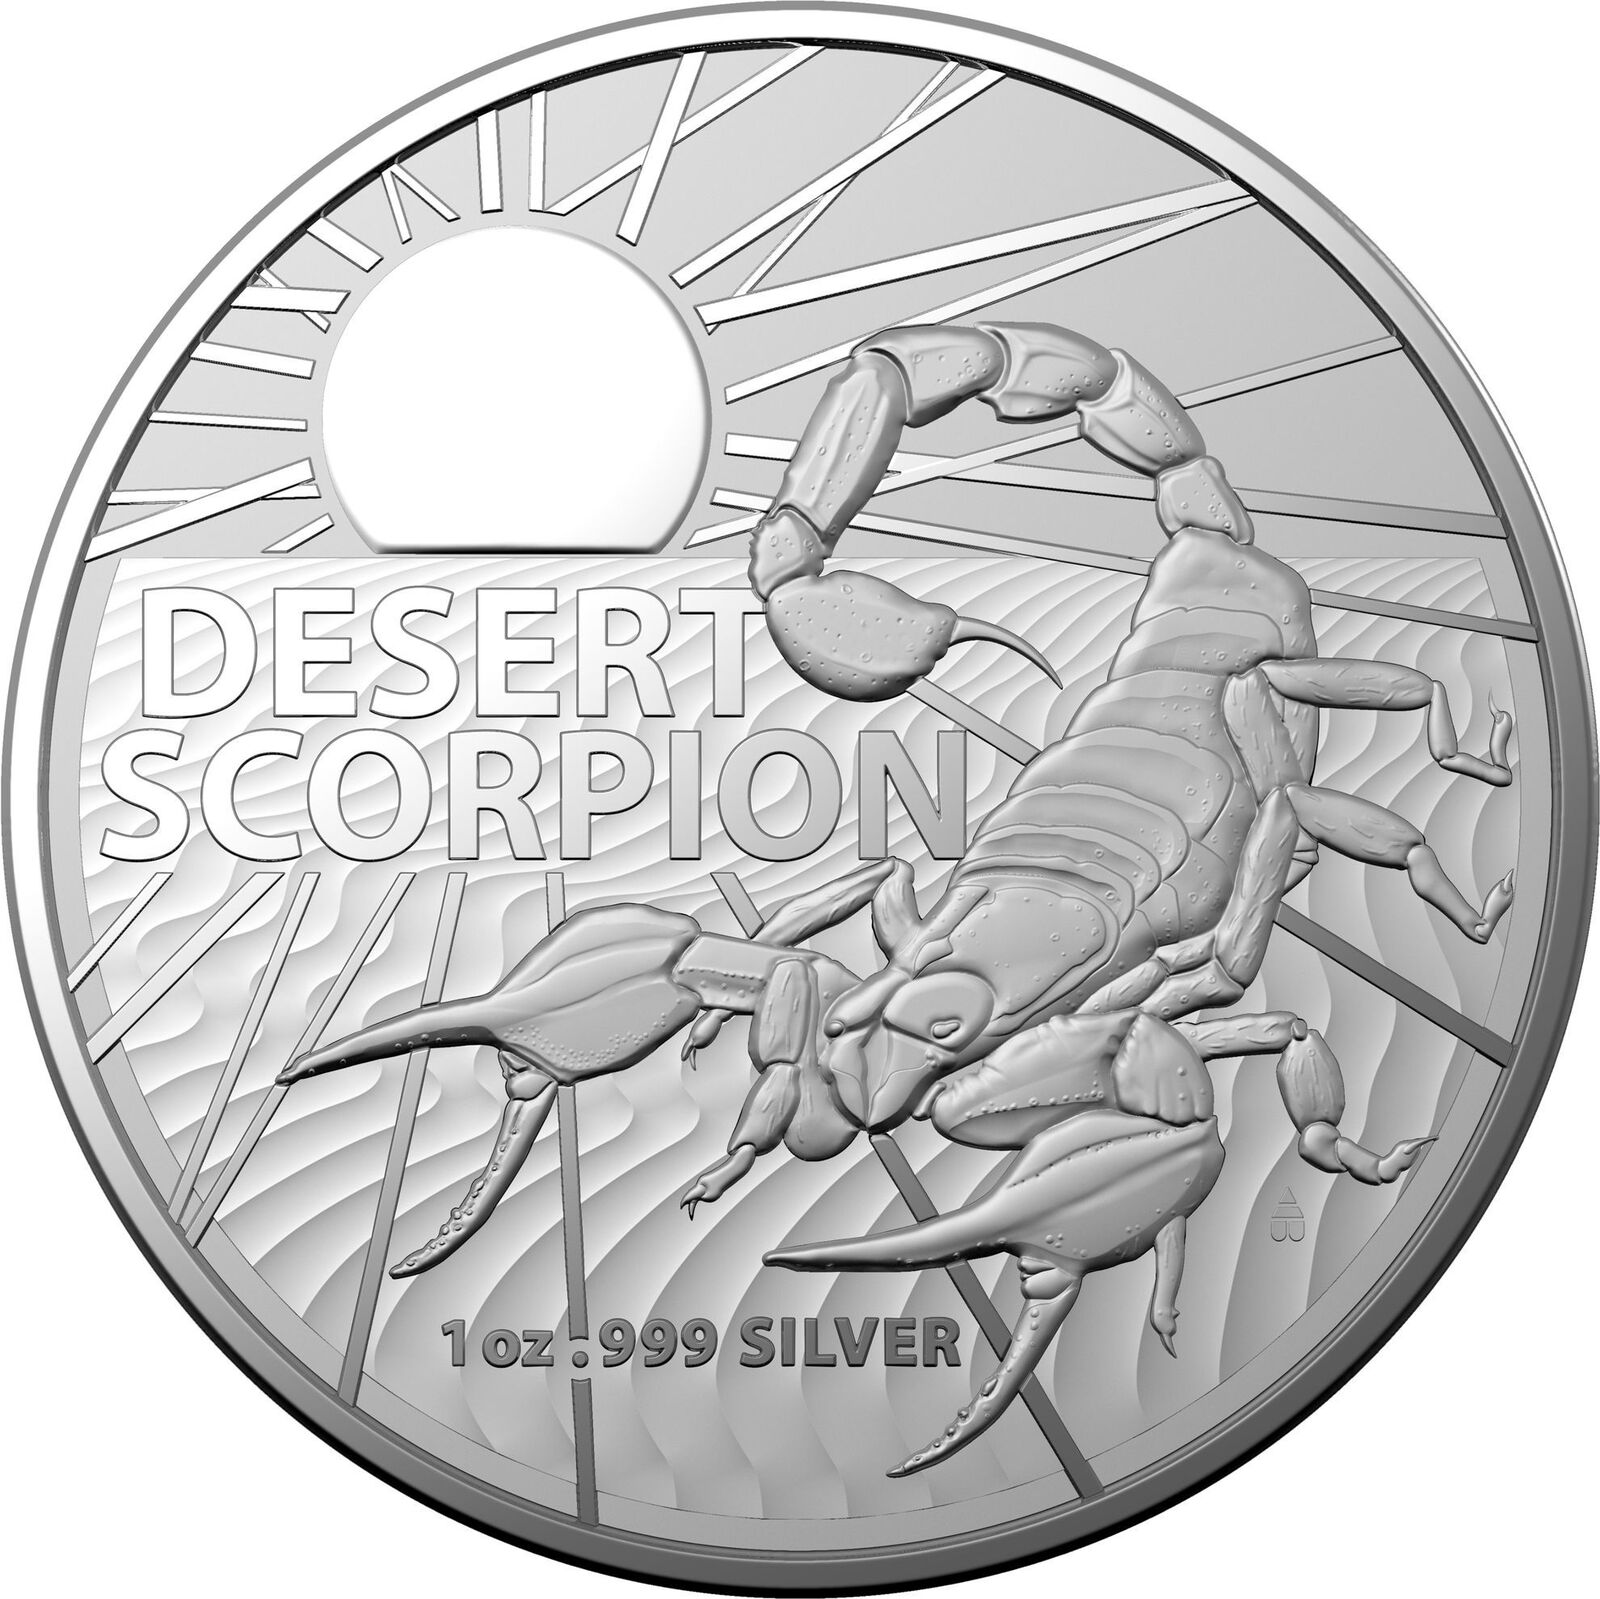 2022 $1 Australian Desert Scorpion Investment Coin 